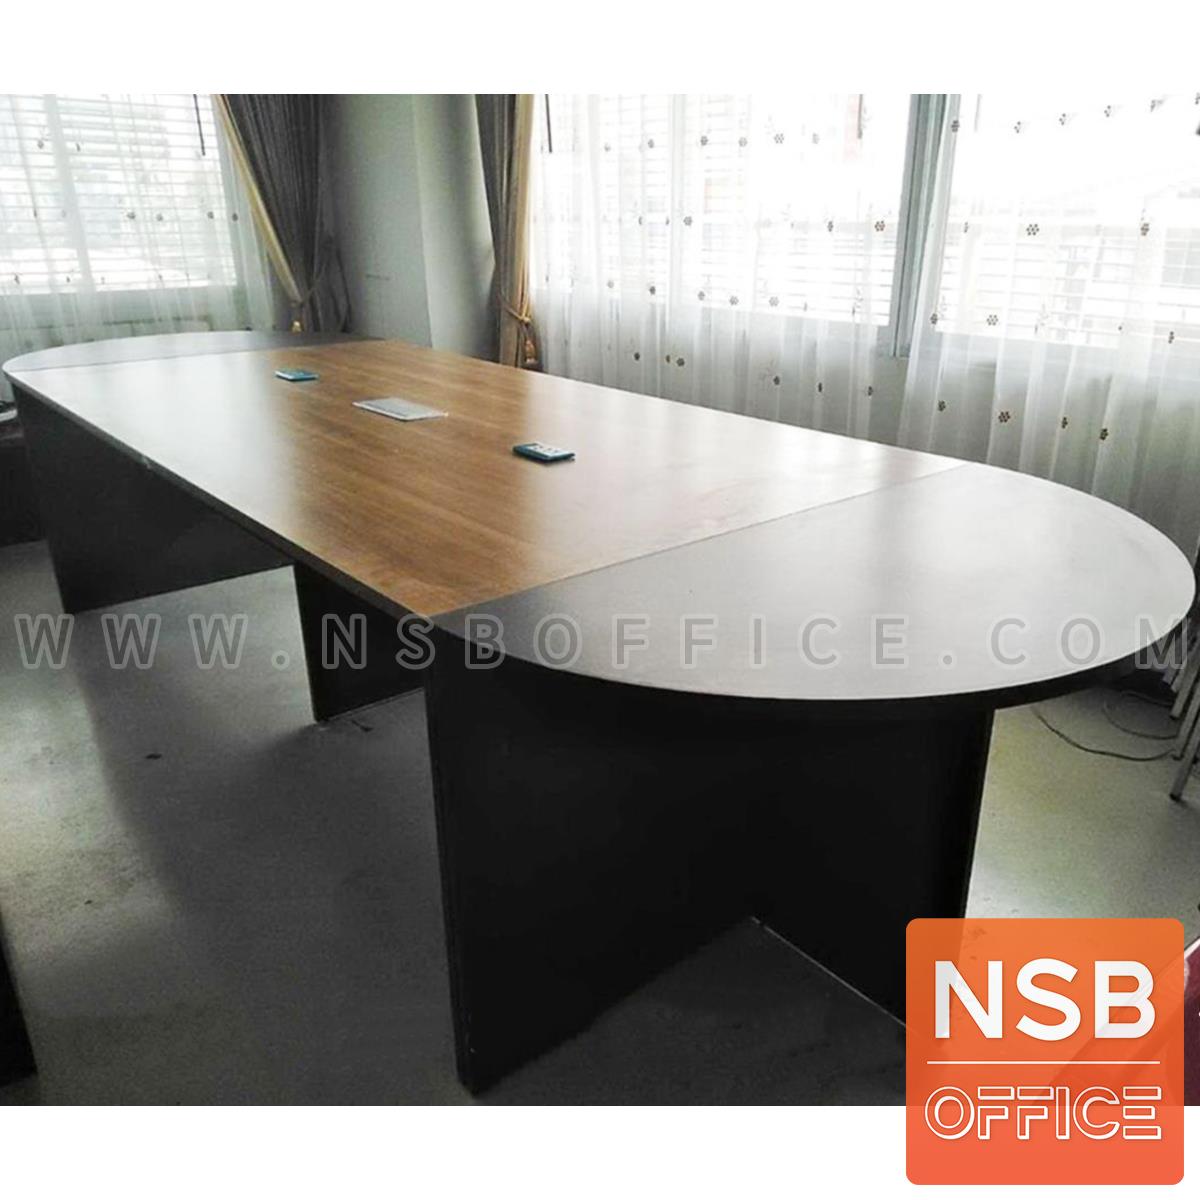 โต๊ะประชุมทรงแคปซูลไม้ล้วน  ขนาด 360W*120D cm. พร้อมป็อบอัพหน้าโต๊ะ